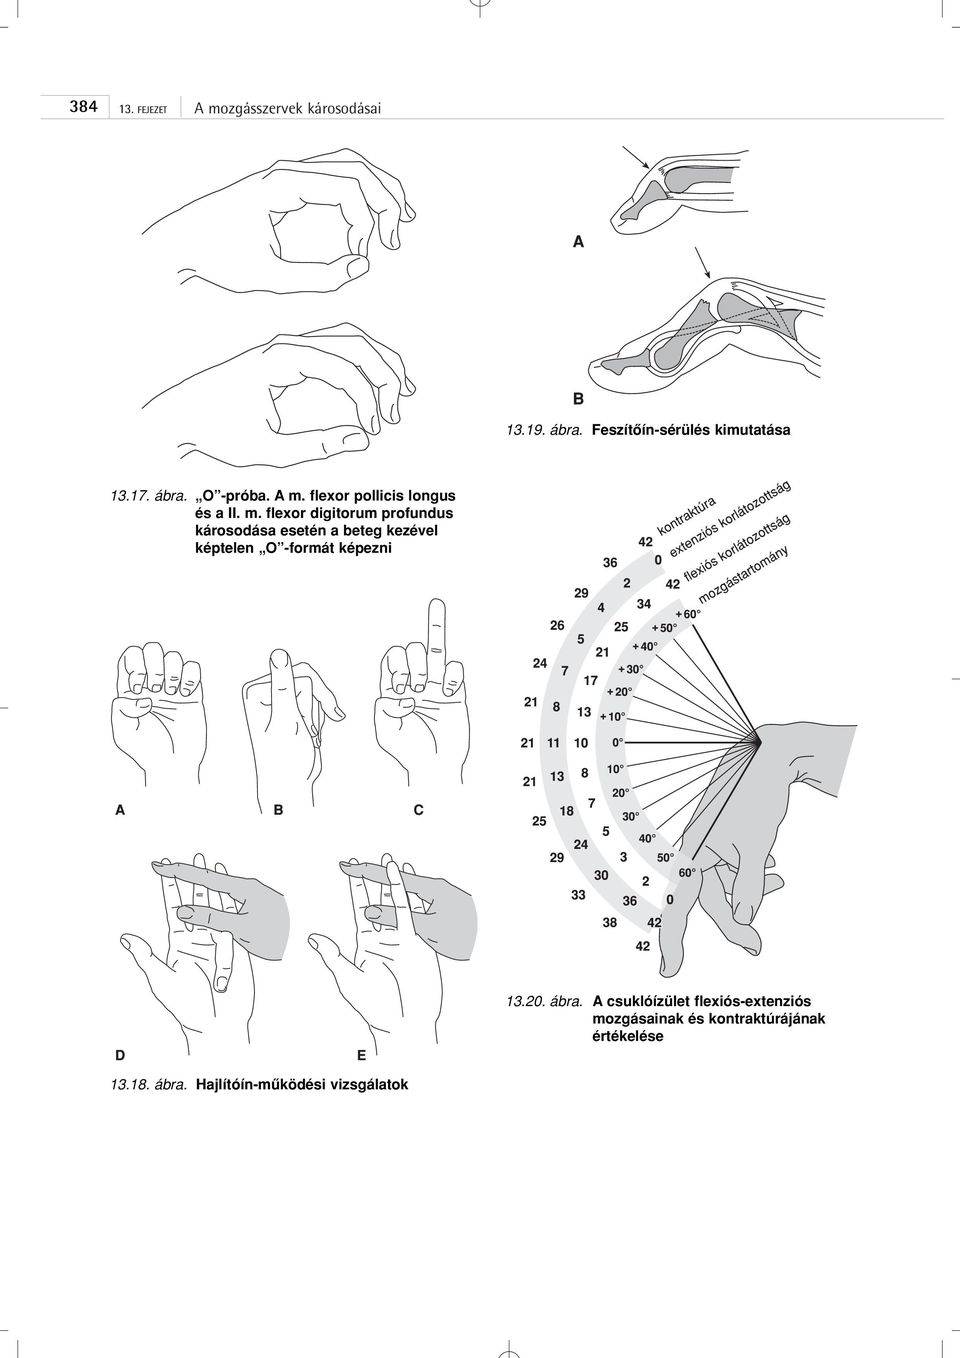 flexor digitorum profundus károsodása esetén a beteg kezével képtelen O -formát